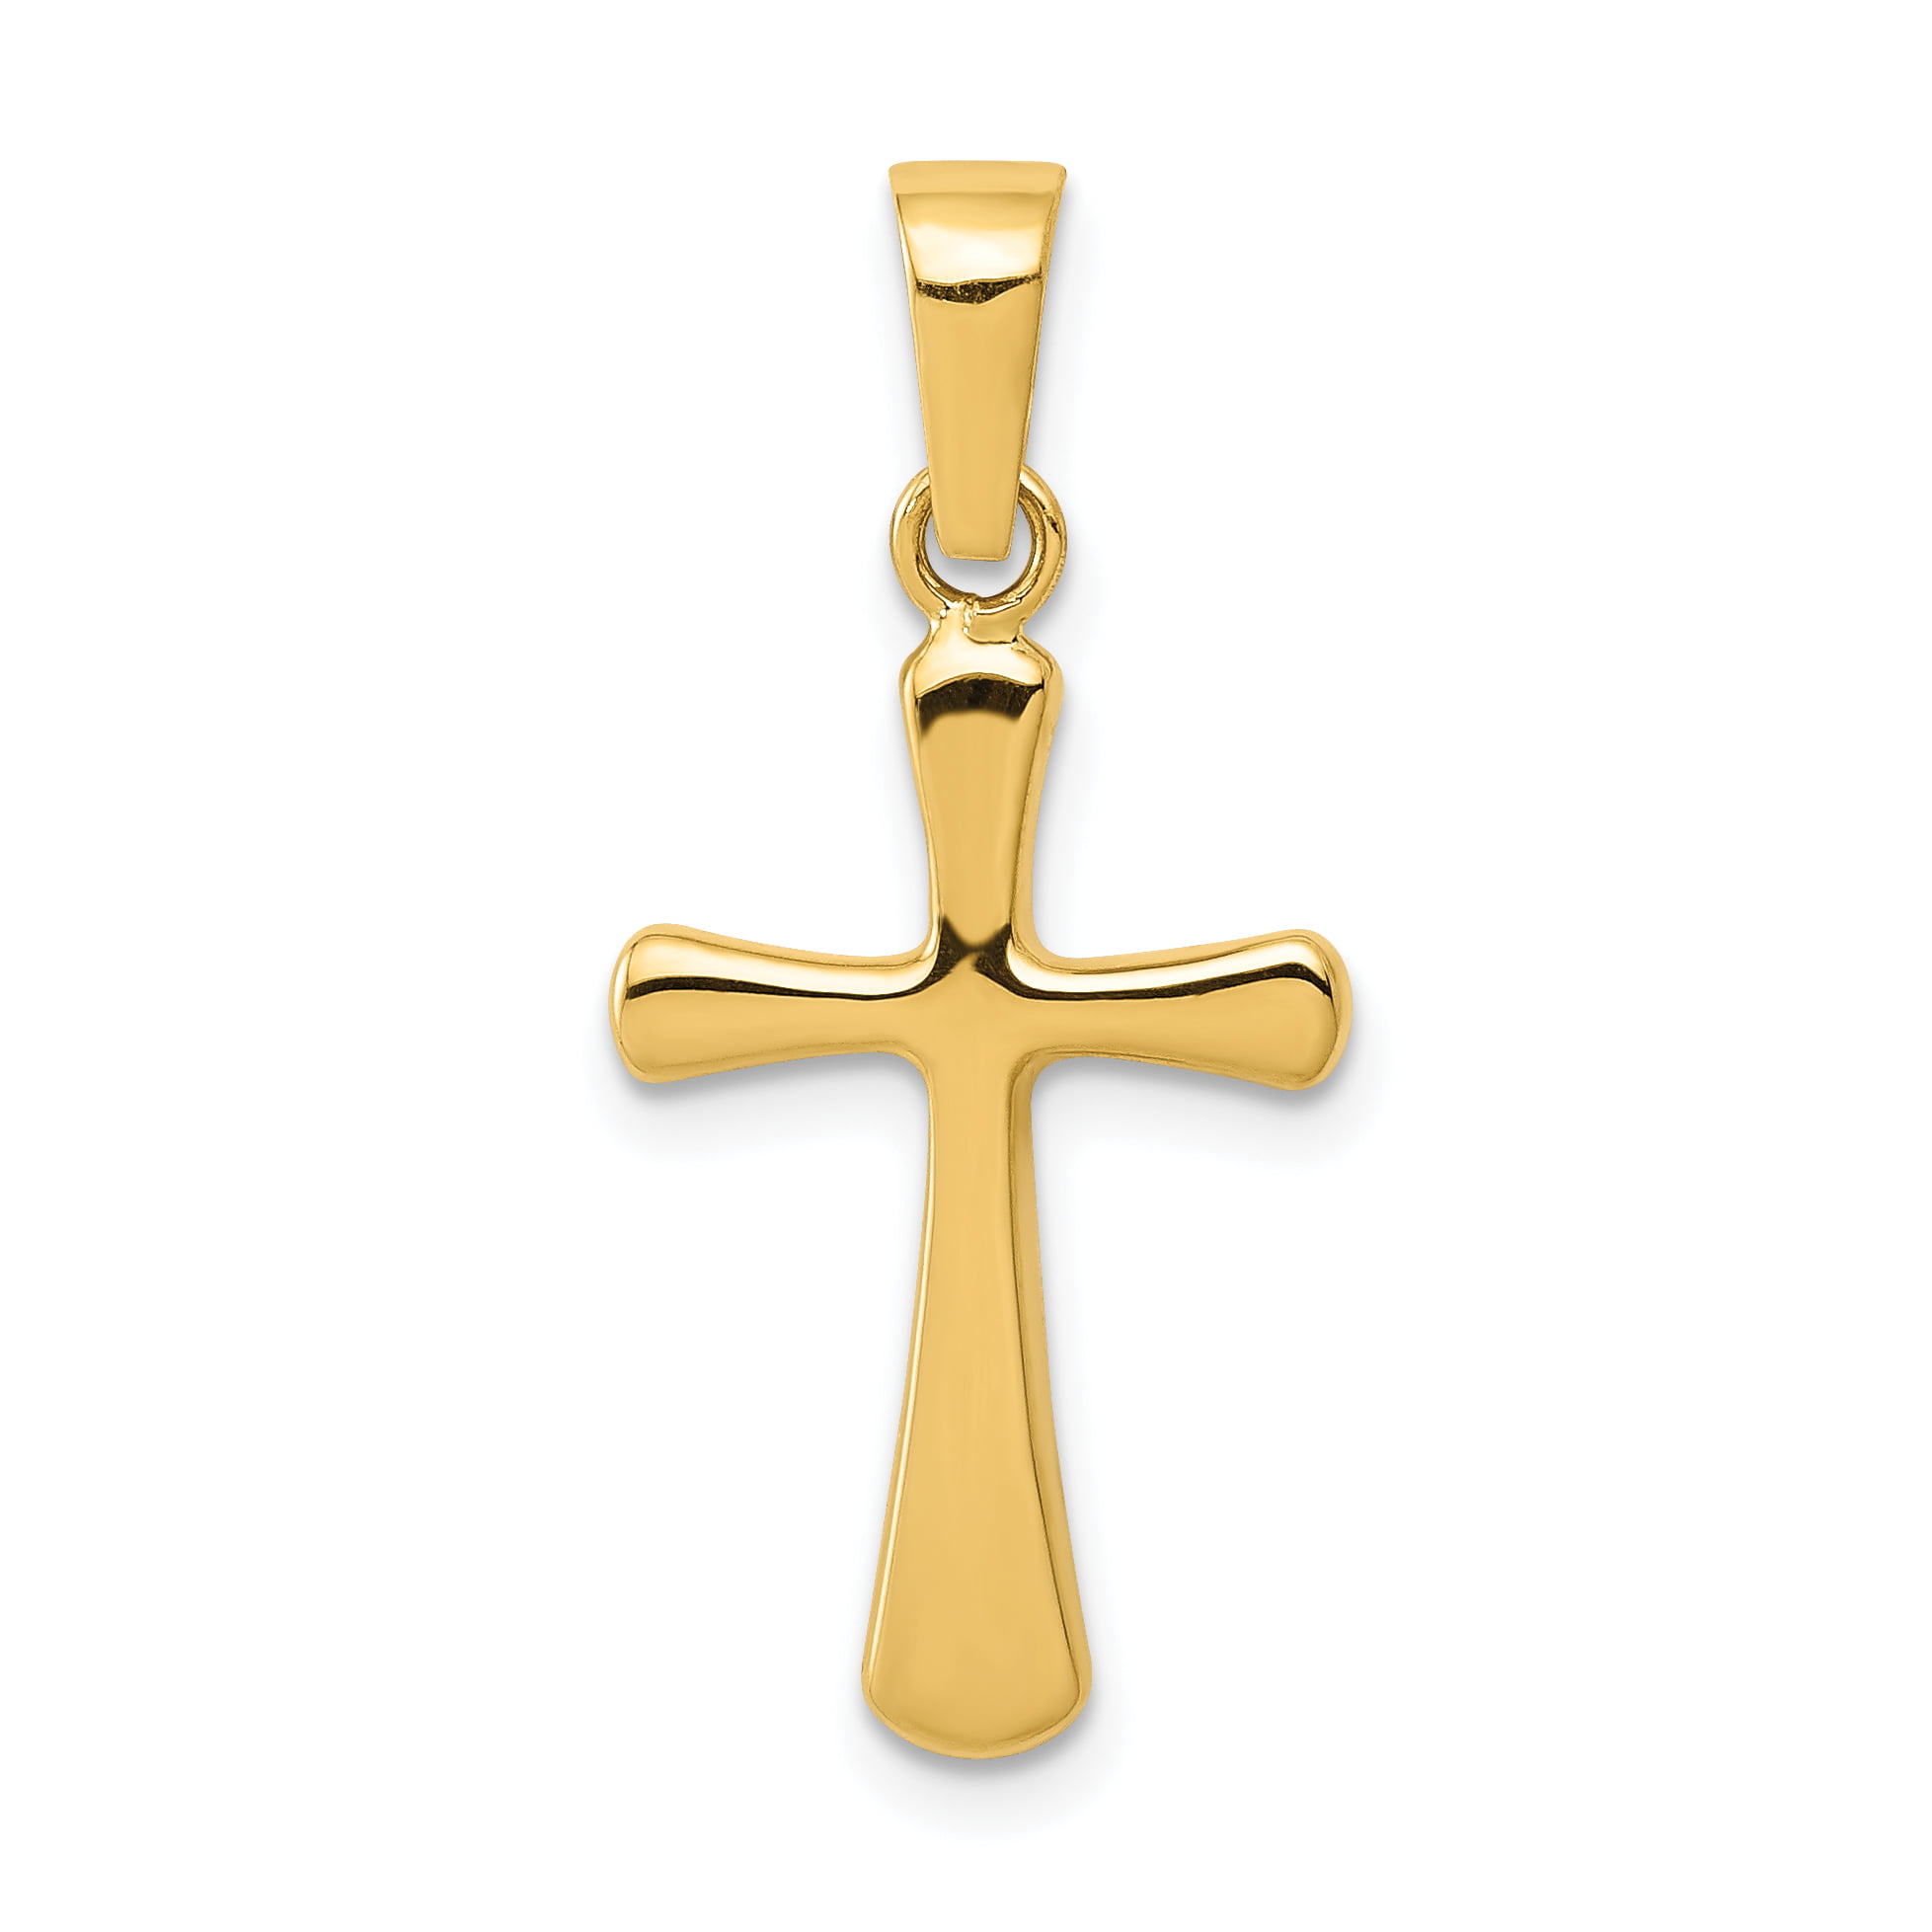 Primal Gold - Primal Gold 14 Karat Yellow Gold Polished Cross Pendant ...